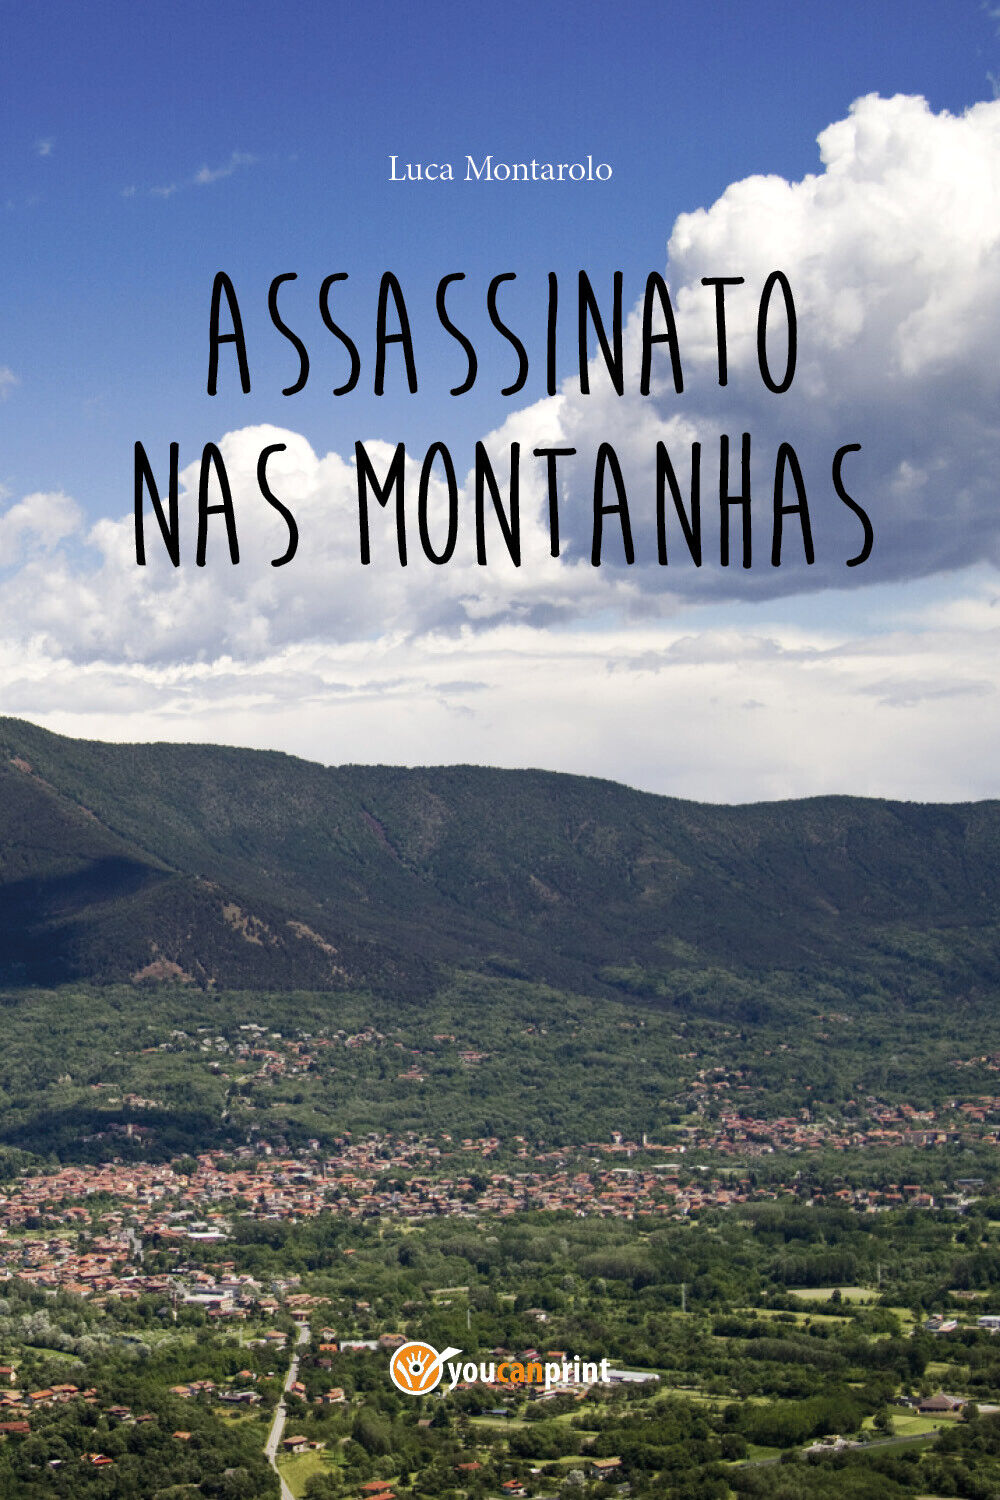 Assassinato nas montanhas  di Luca Montarolo,  2018,  Youcanprint